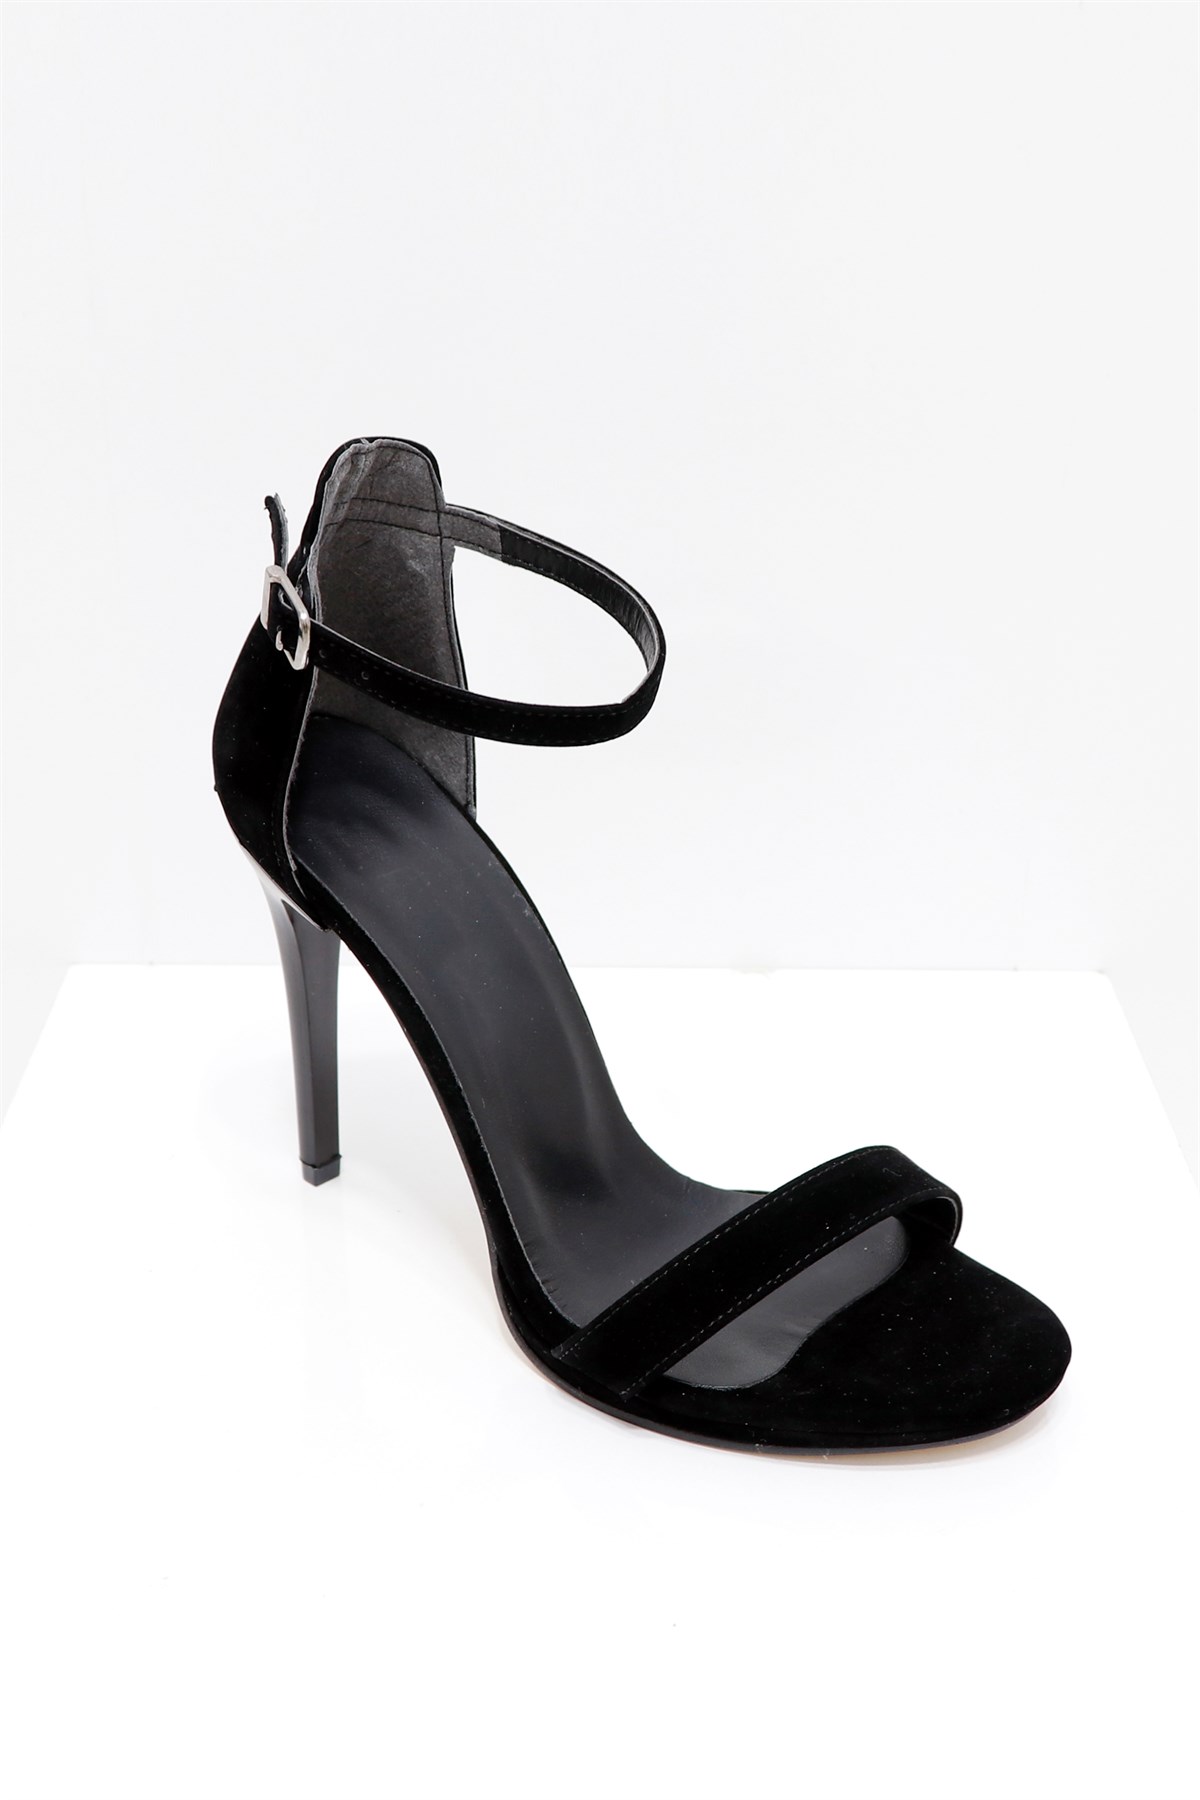 Siyah süet İnce Topuklu Tek Bant Sandalet 733 Fiyatı ve Modelleri